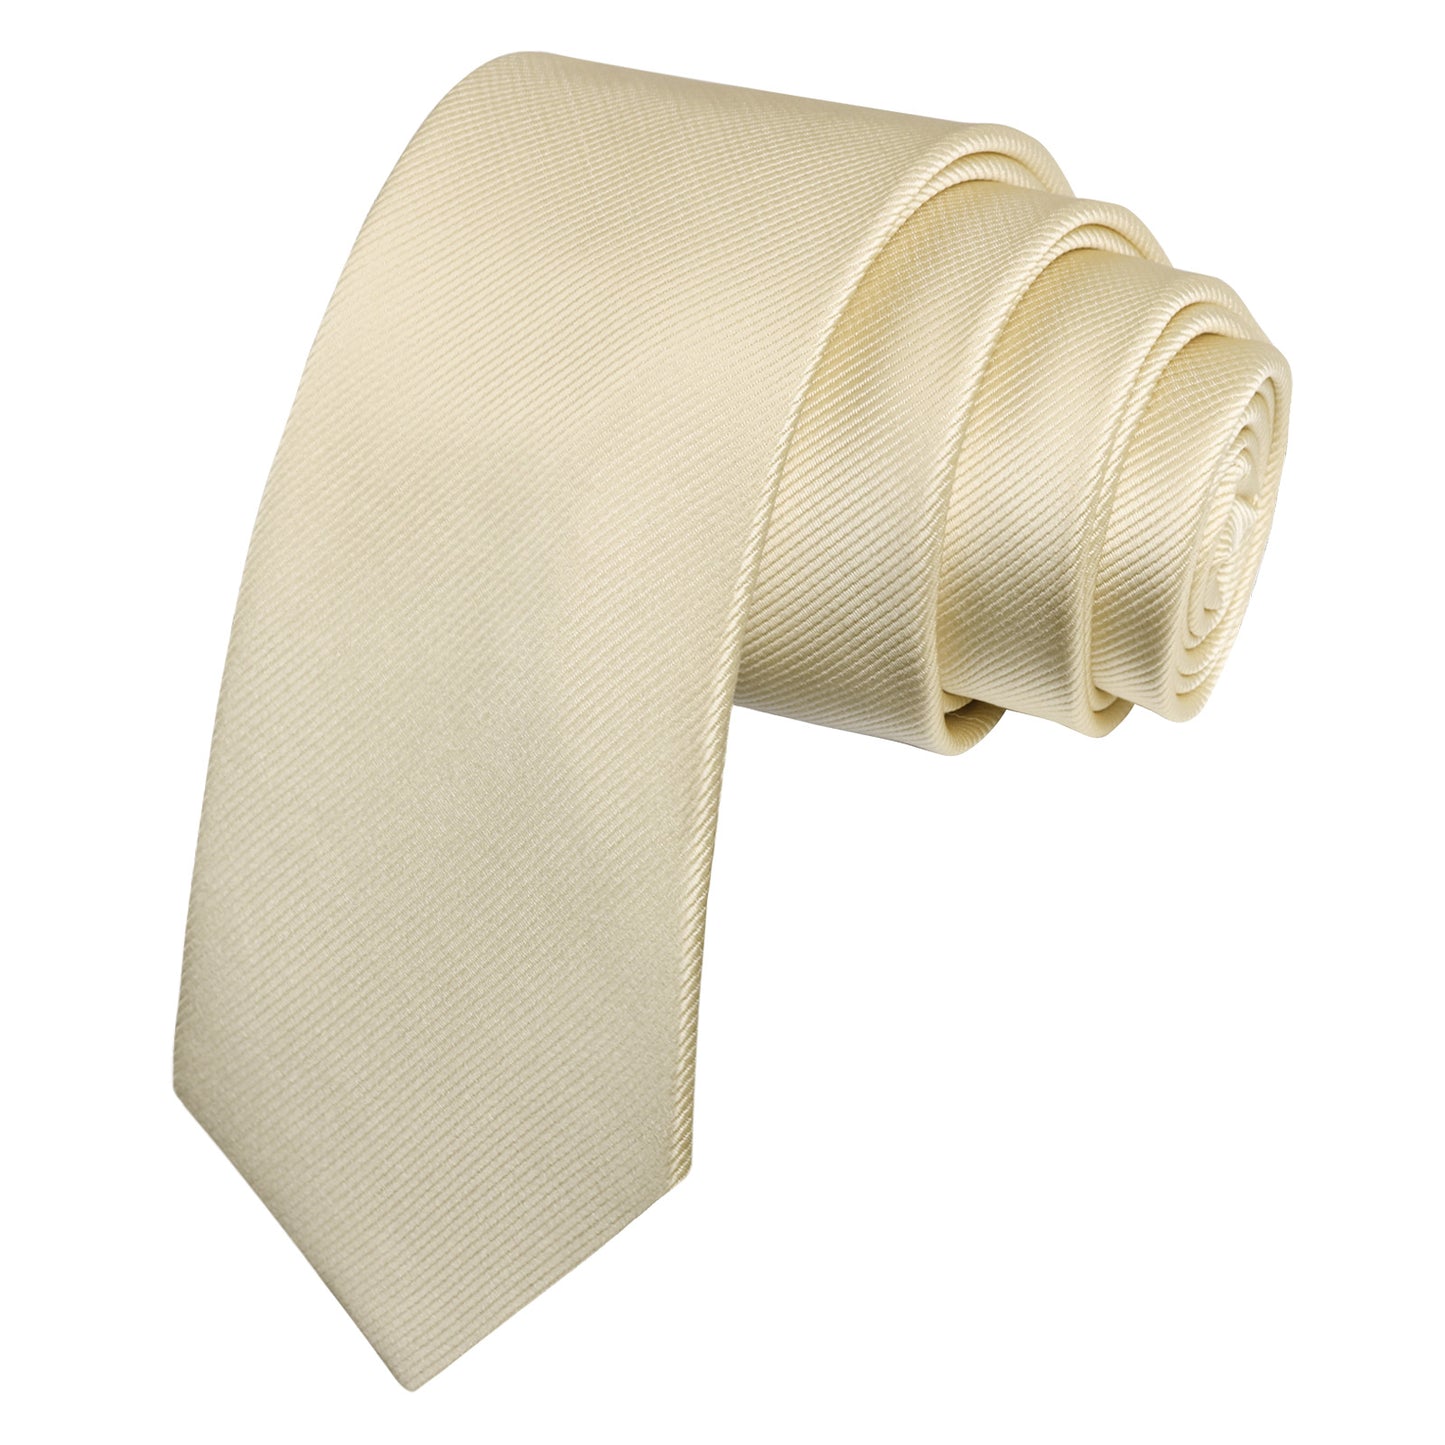 Alizeal Men's Solid Color Skinny Neckties #071